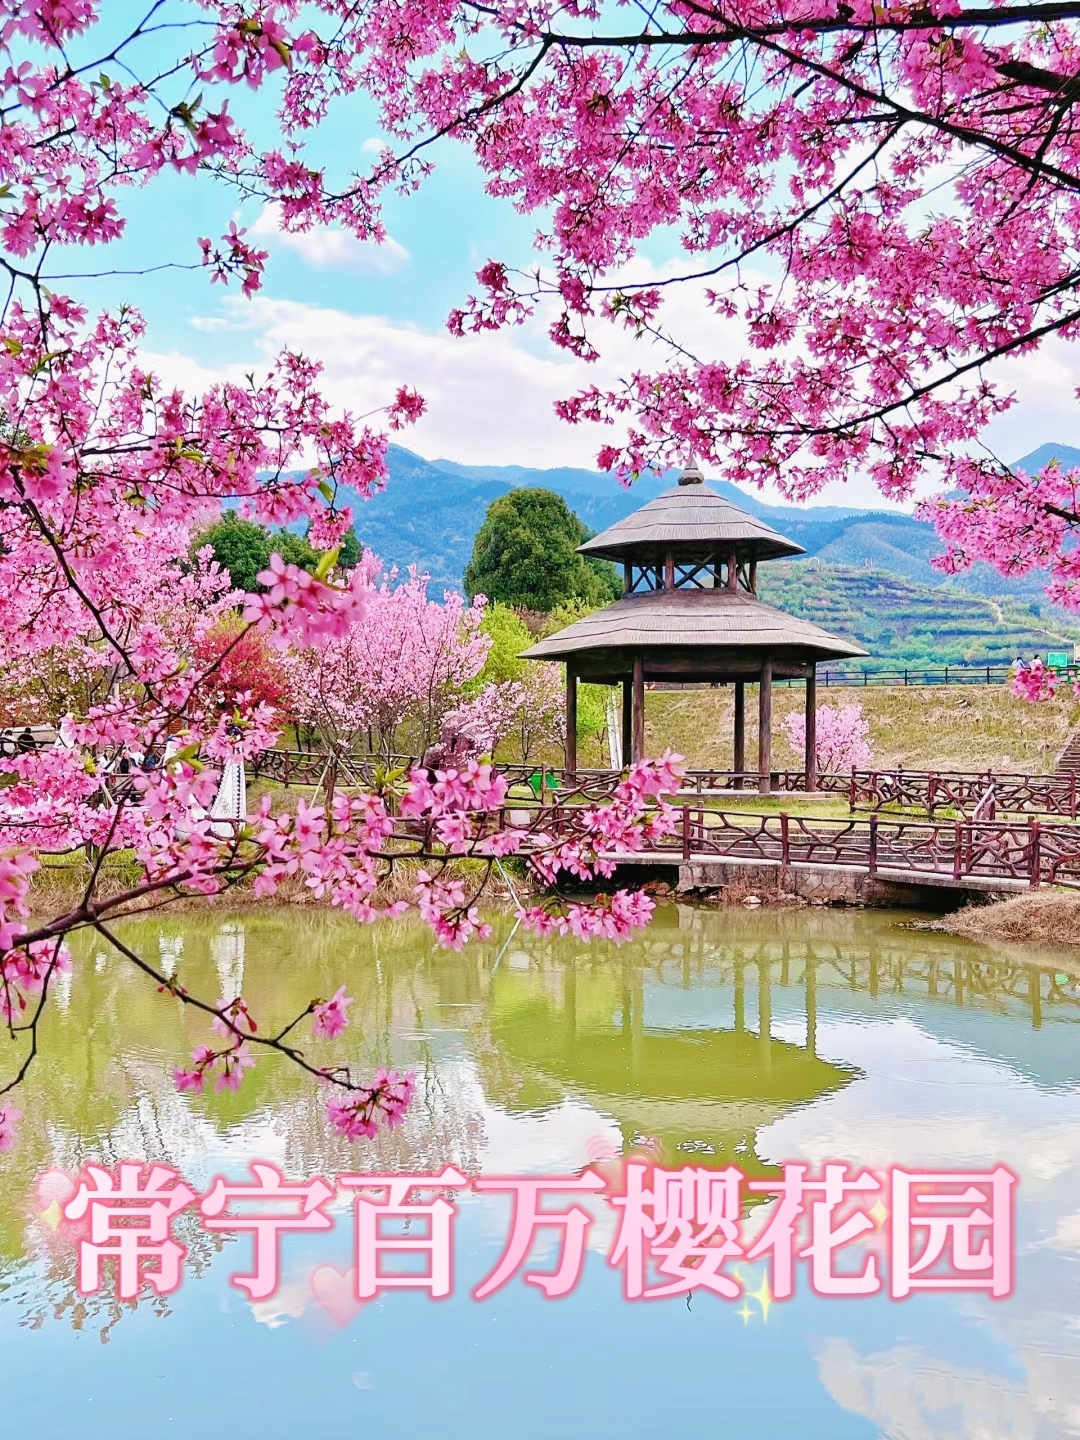 湖南的樱花🌸季要来了～错过又要等一年了!